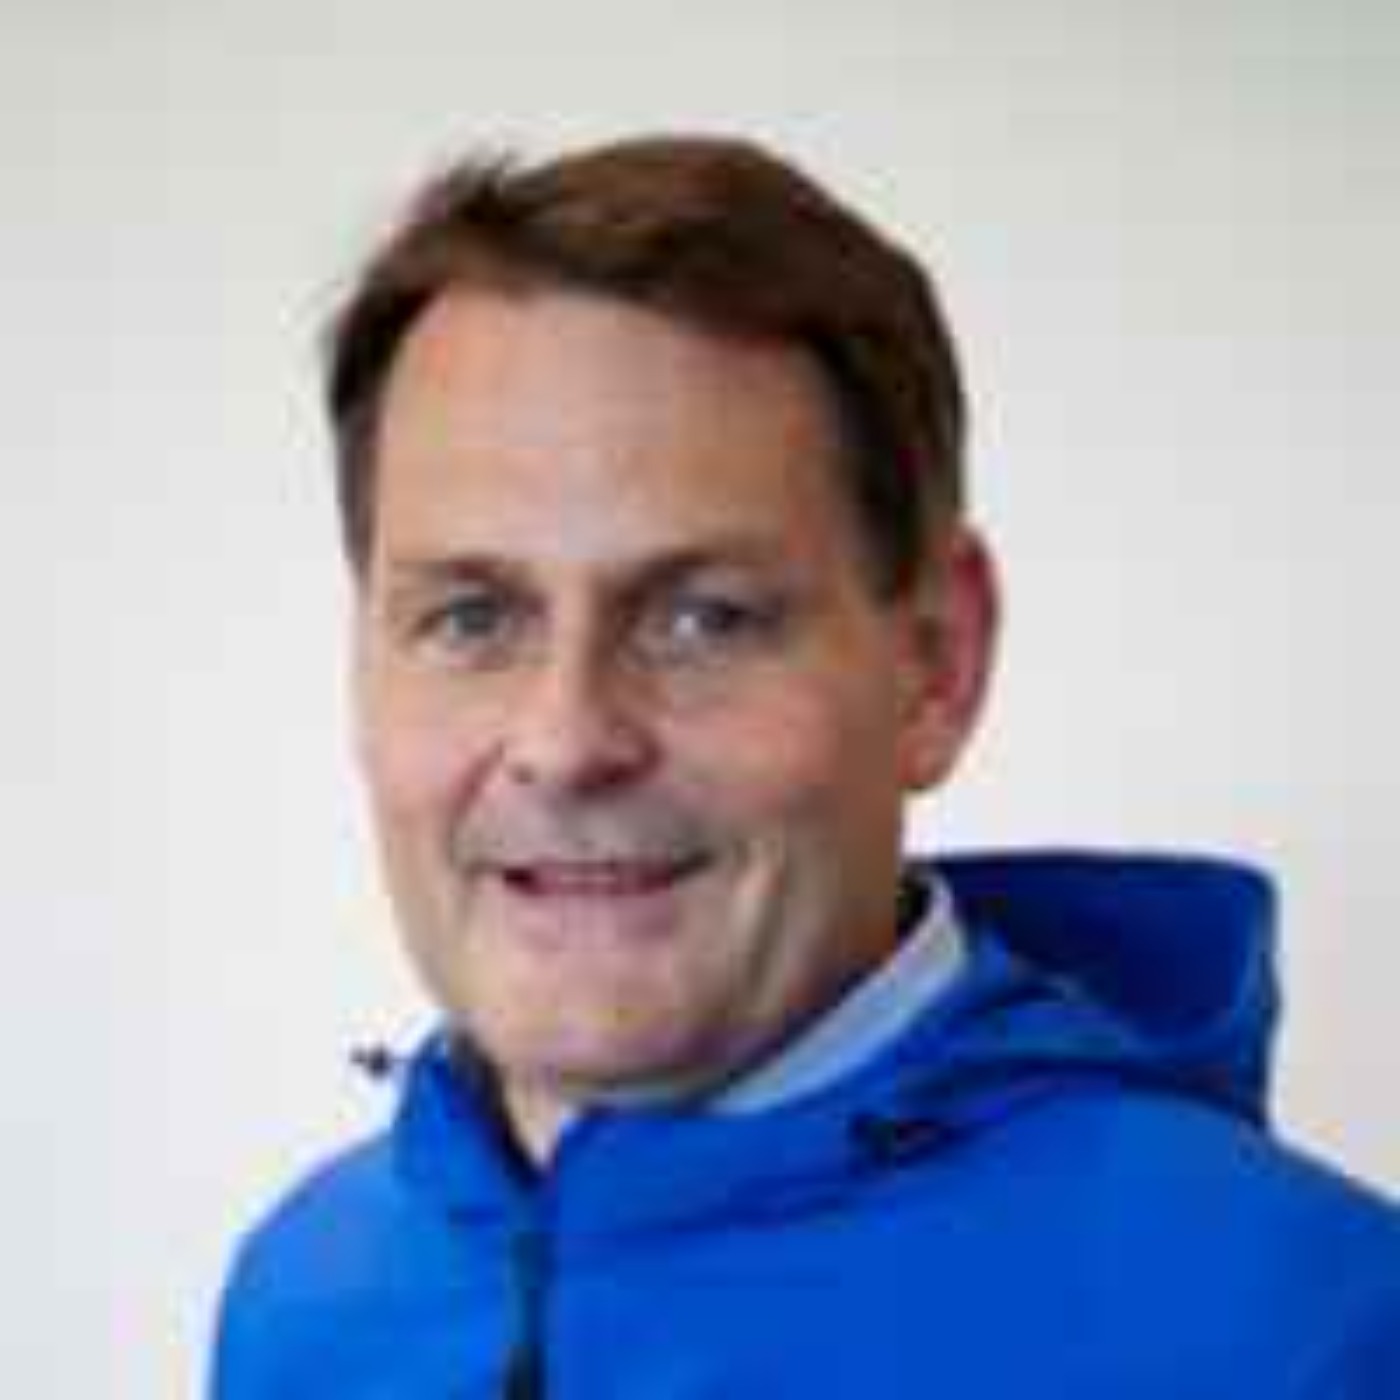 Peter Reinebo - Olympiska frågor med Verksamhetschefen på Sveriges Olympiska Kommitté